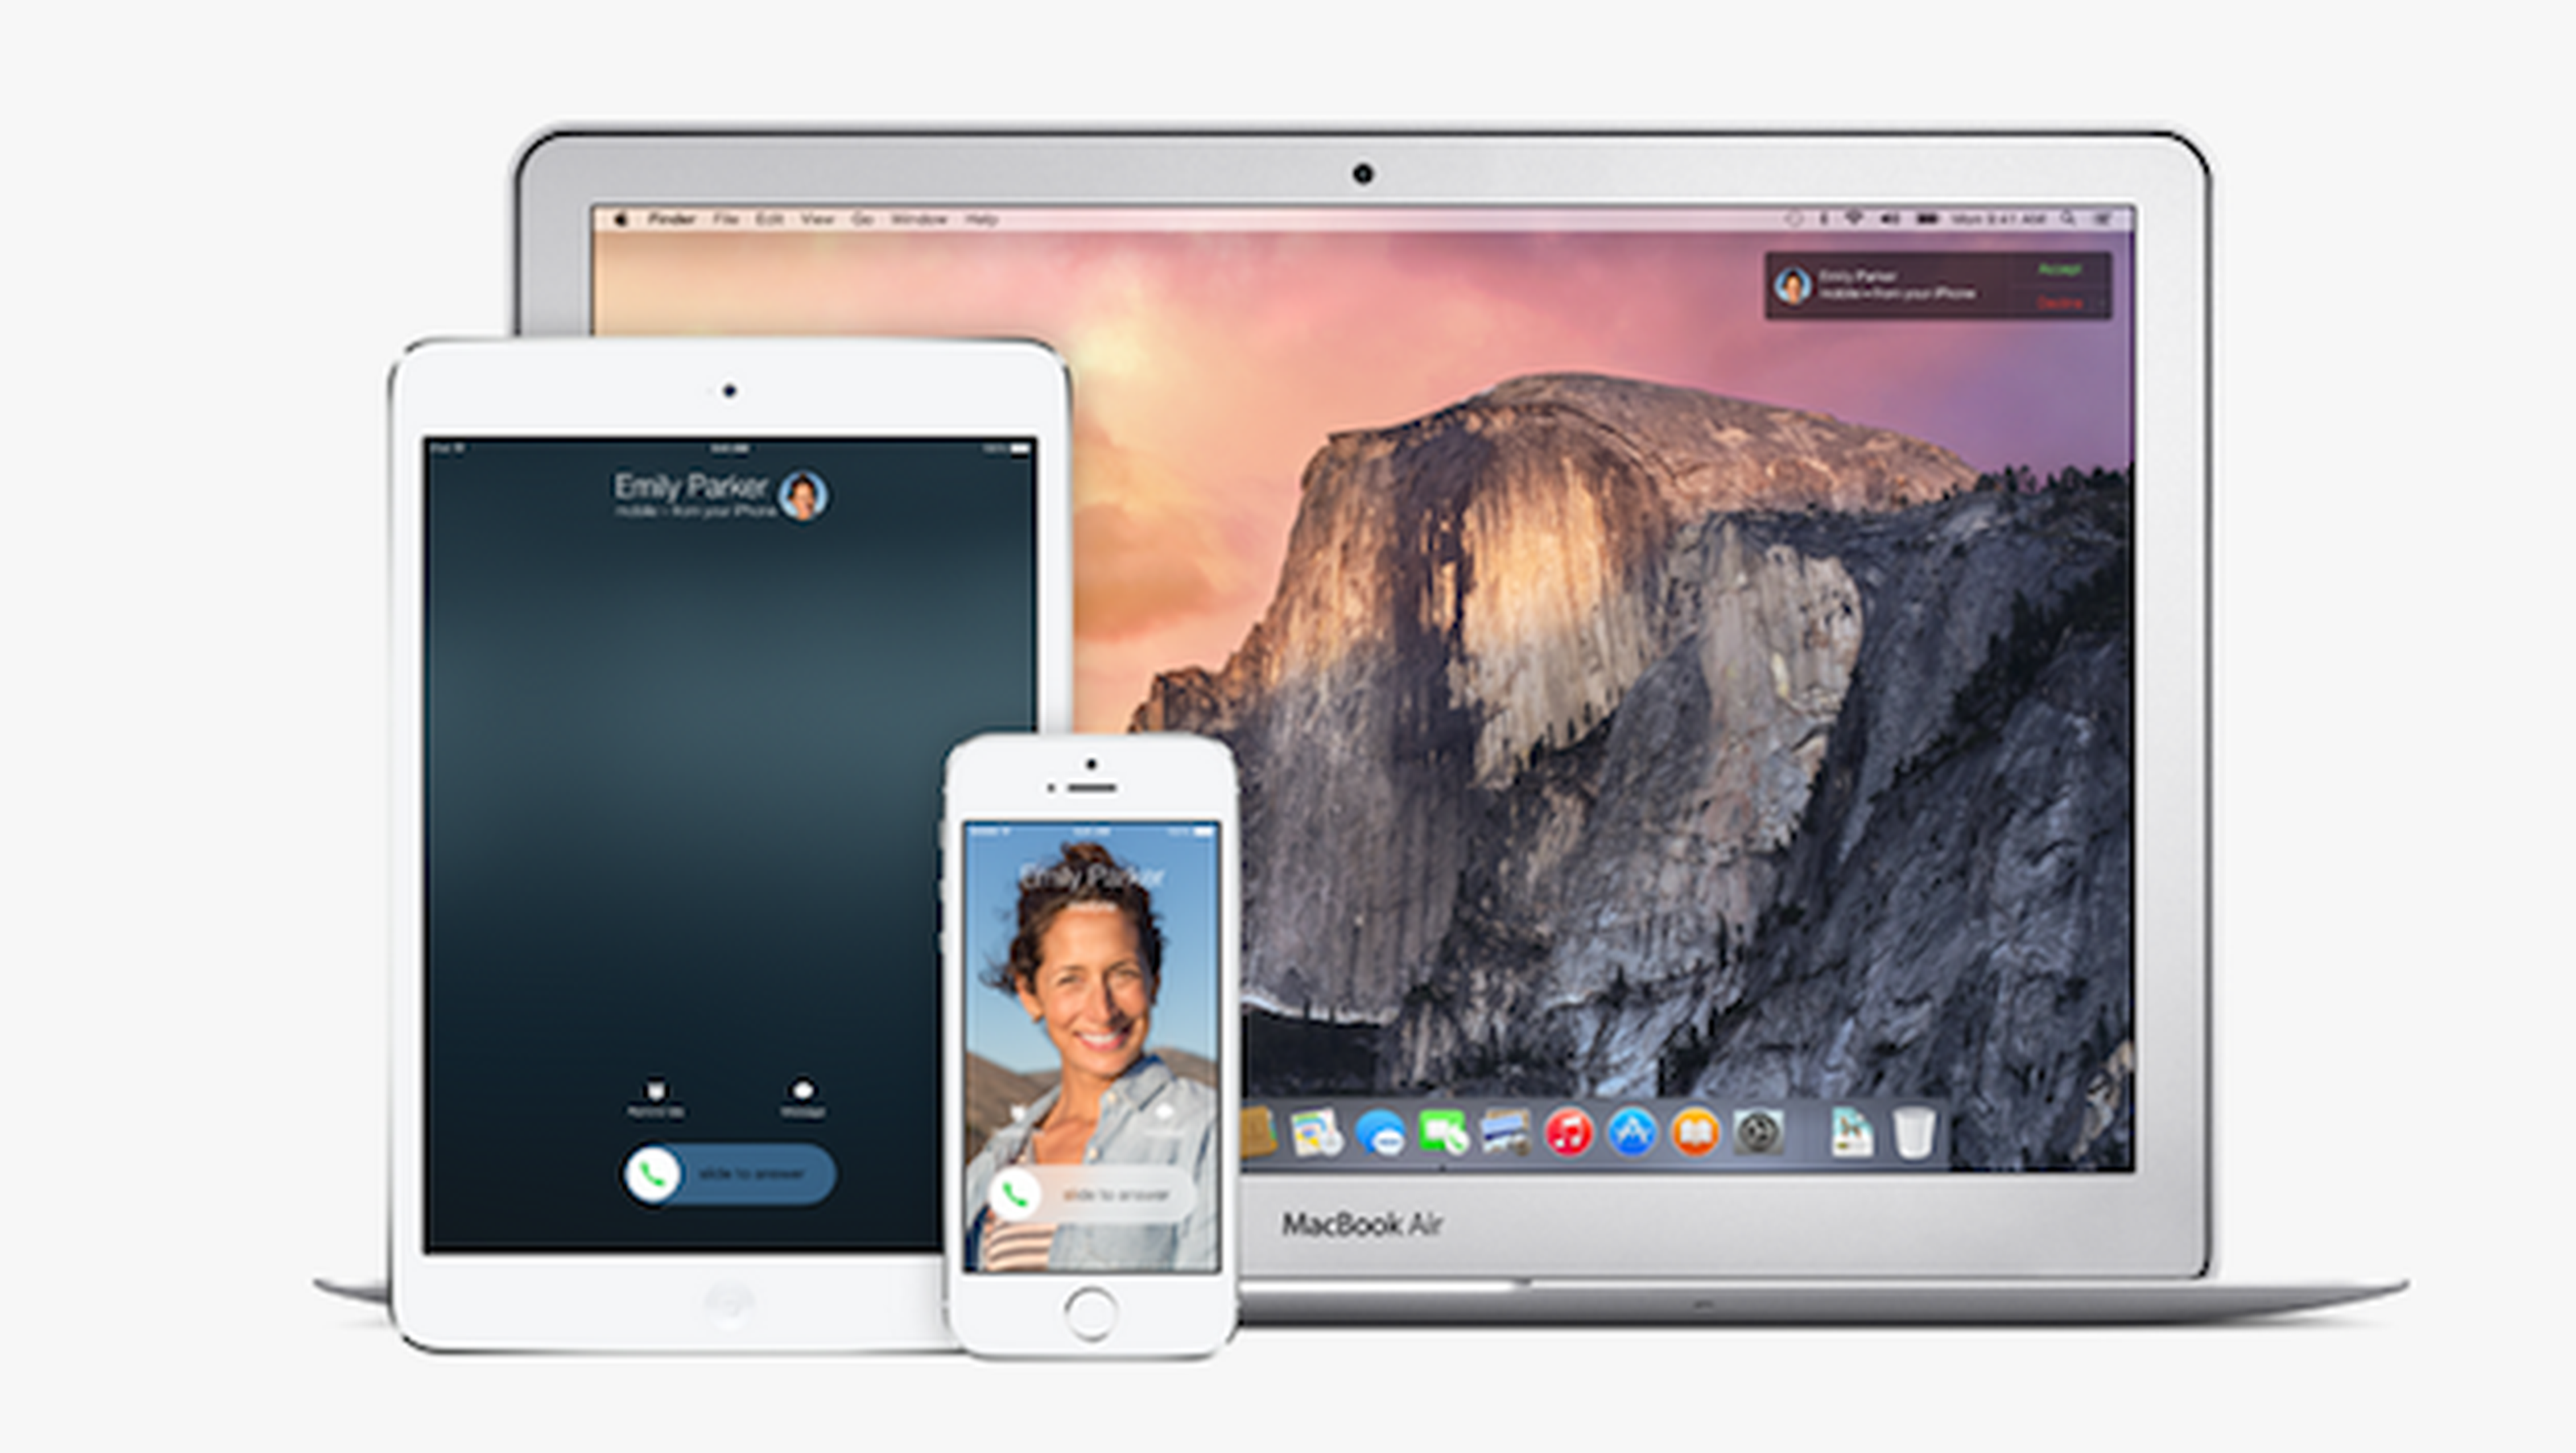 con OS X e iOS 8 será posible hablar por teléfono desde el Maci